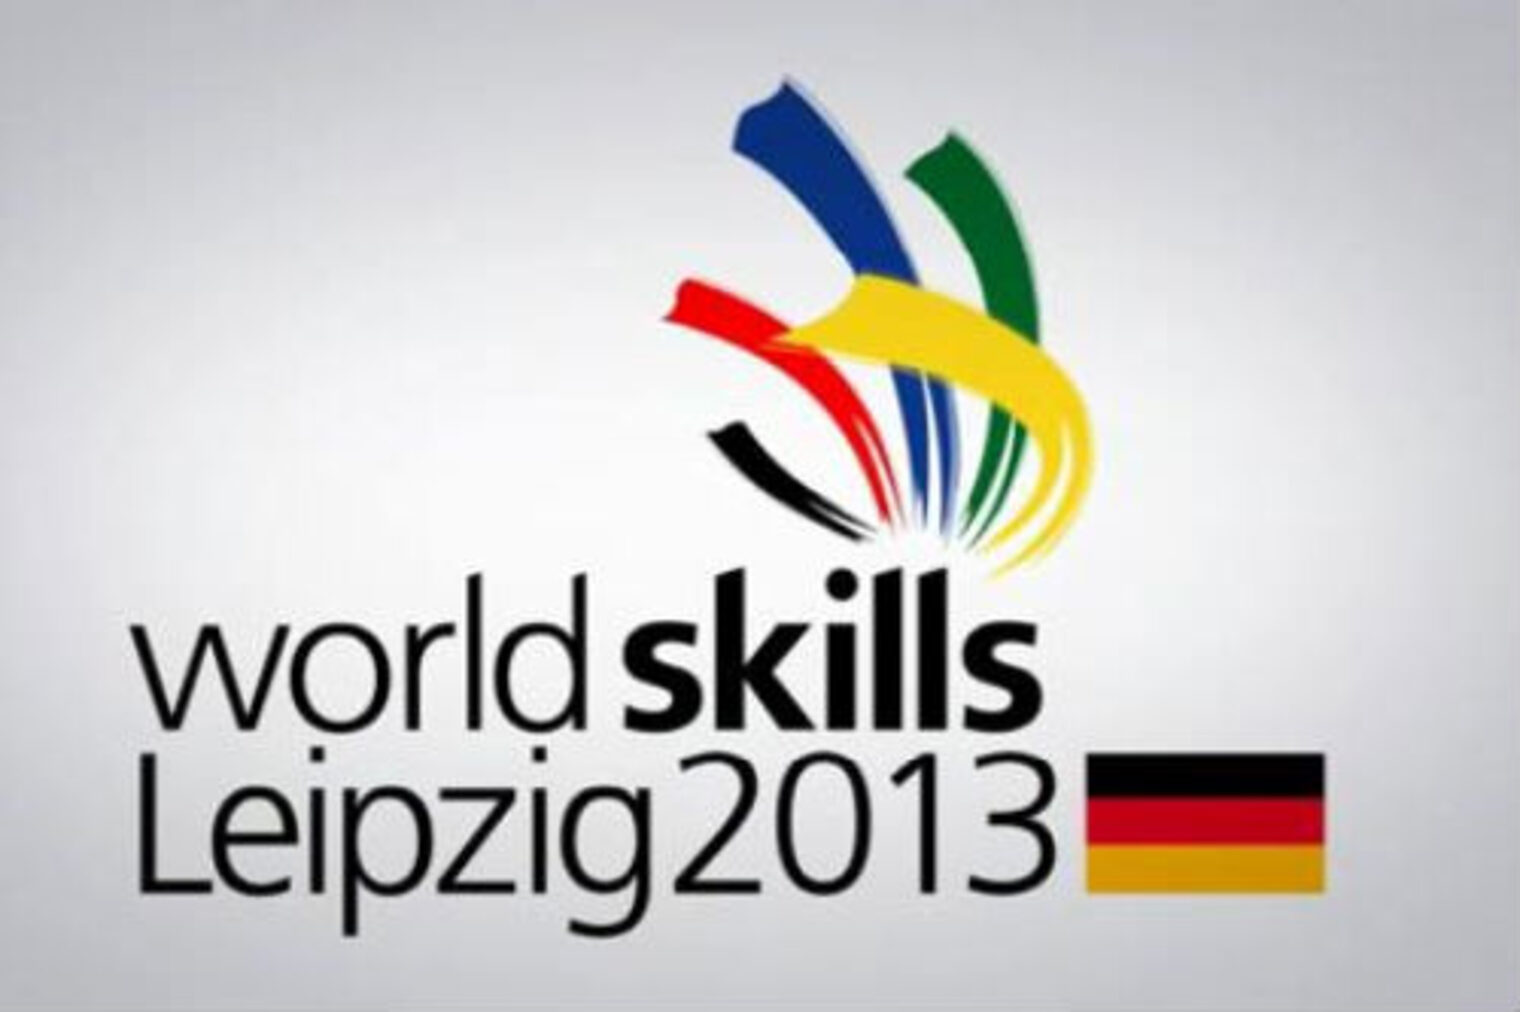 Worldskills Leipzig 2013 - Logo